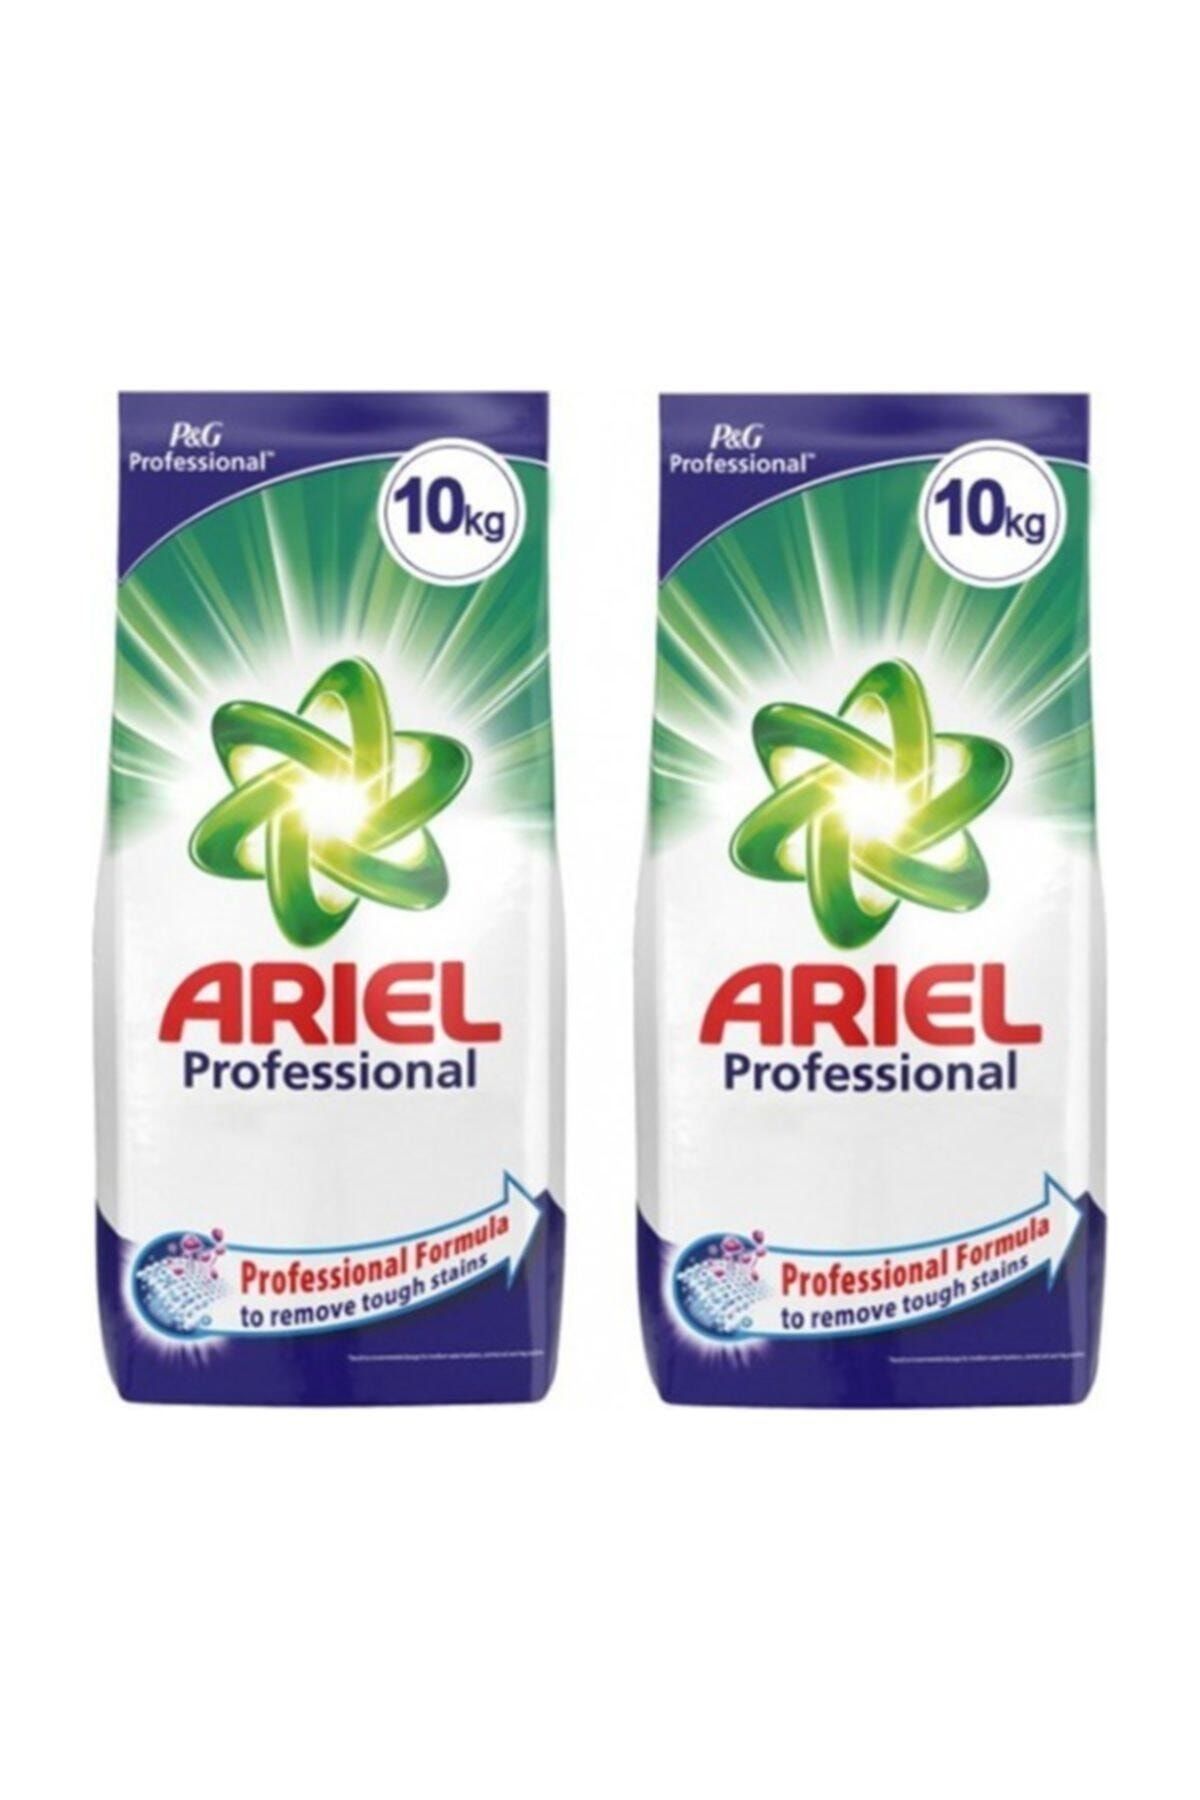 Ariel Professional Toz Deterjan 10kg  10 Kg